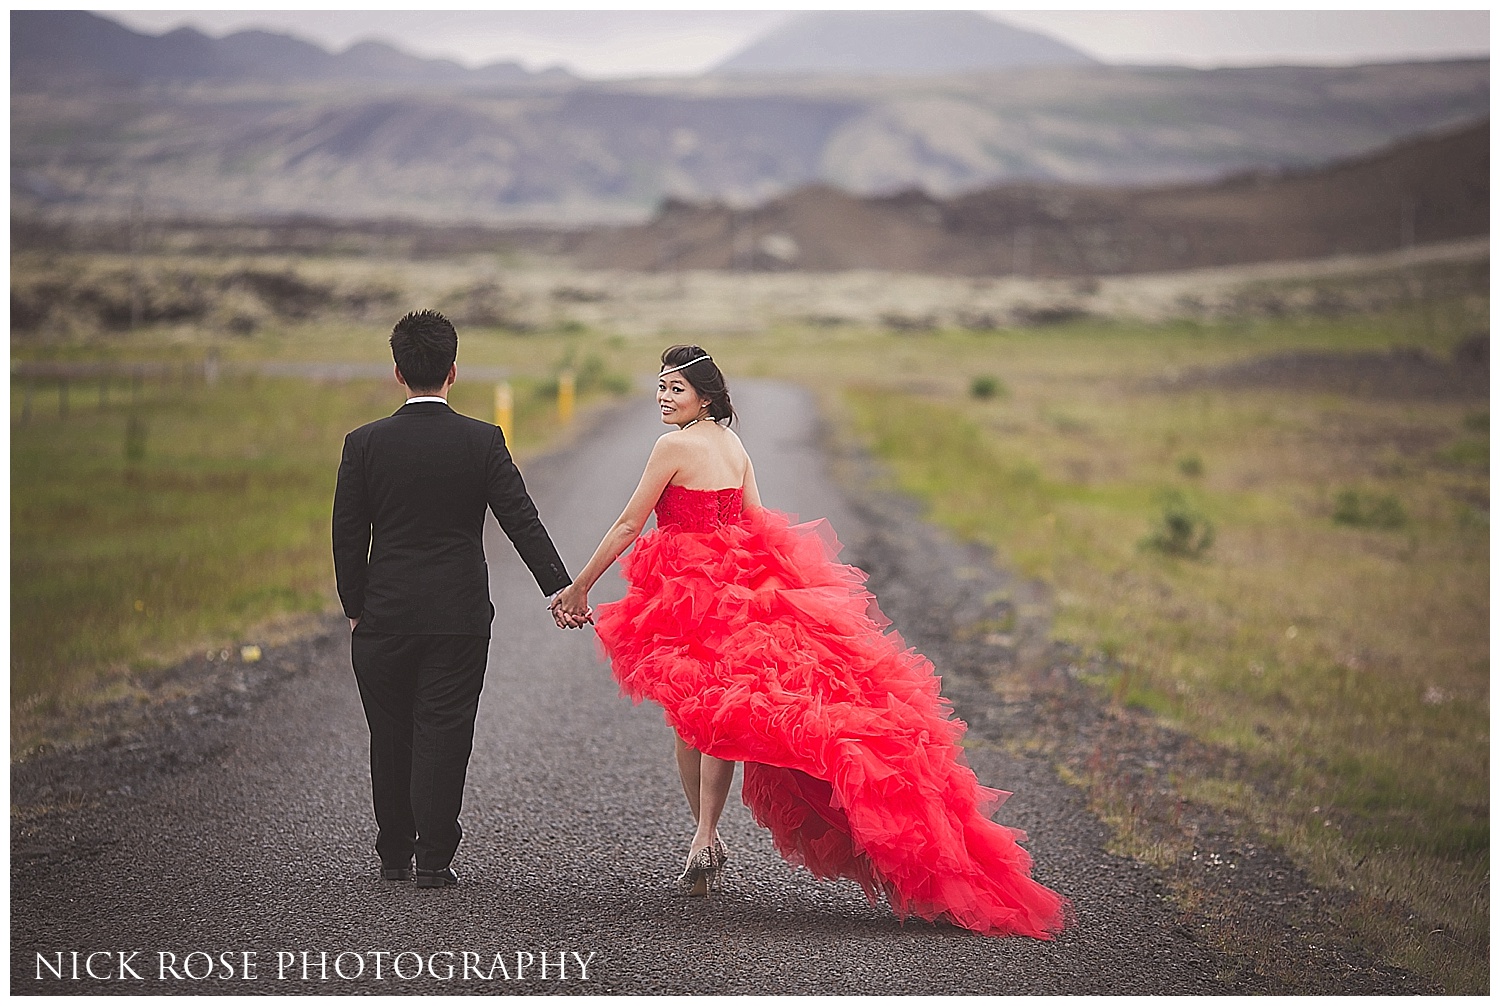 Iceland wedding photographer